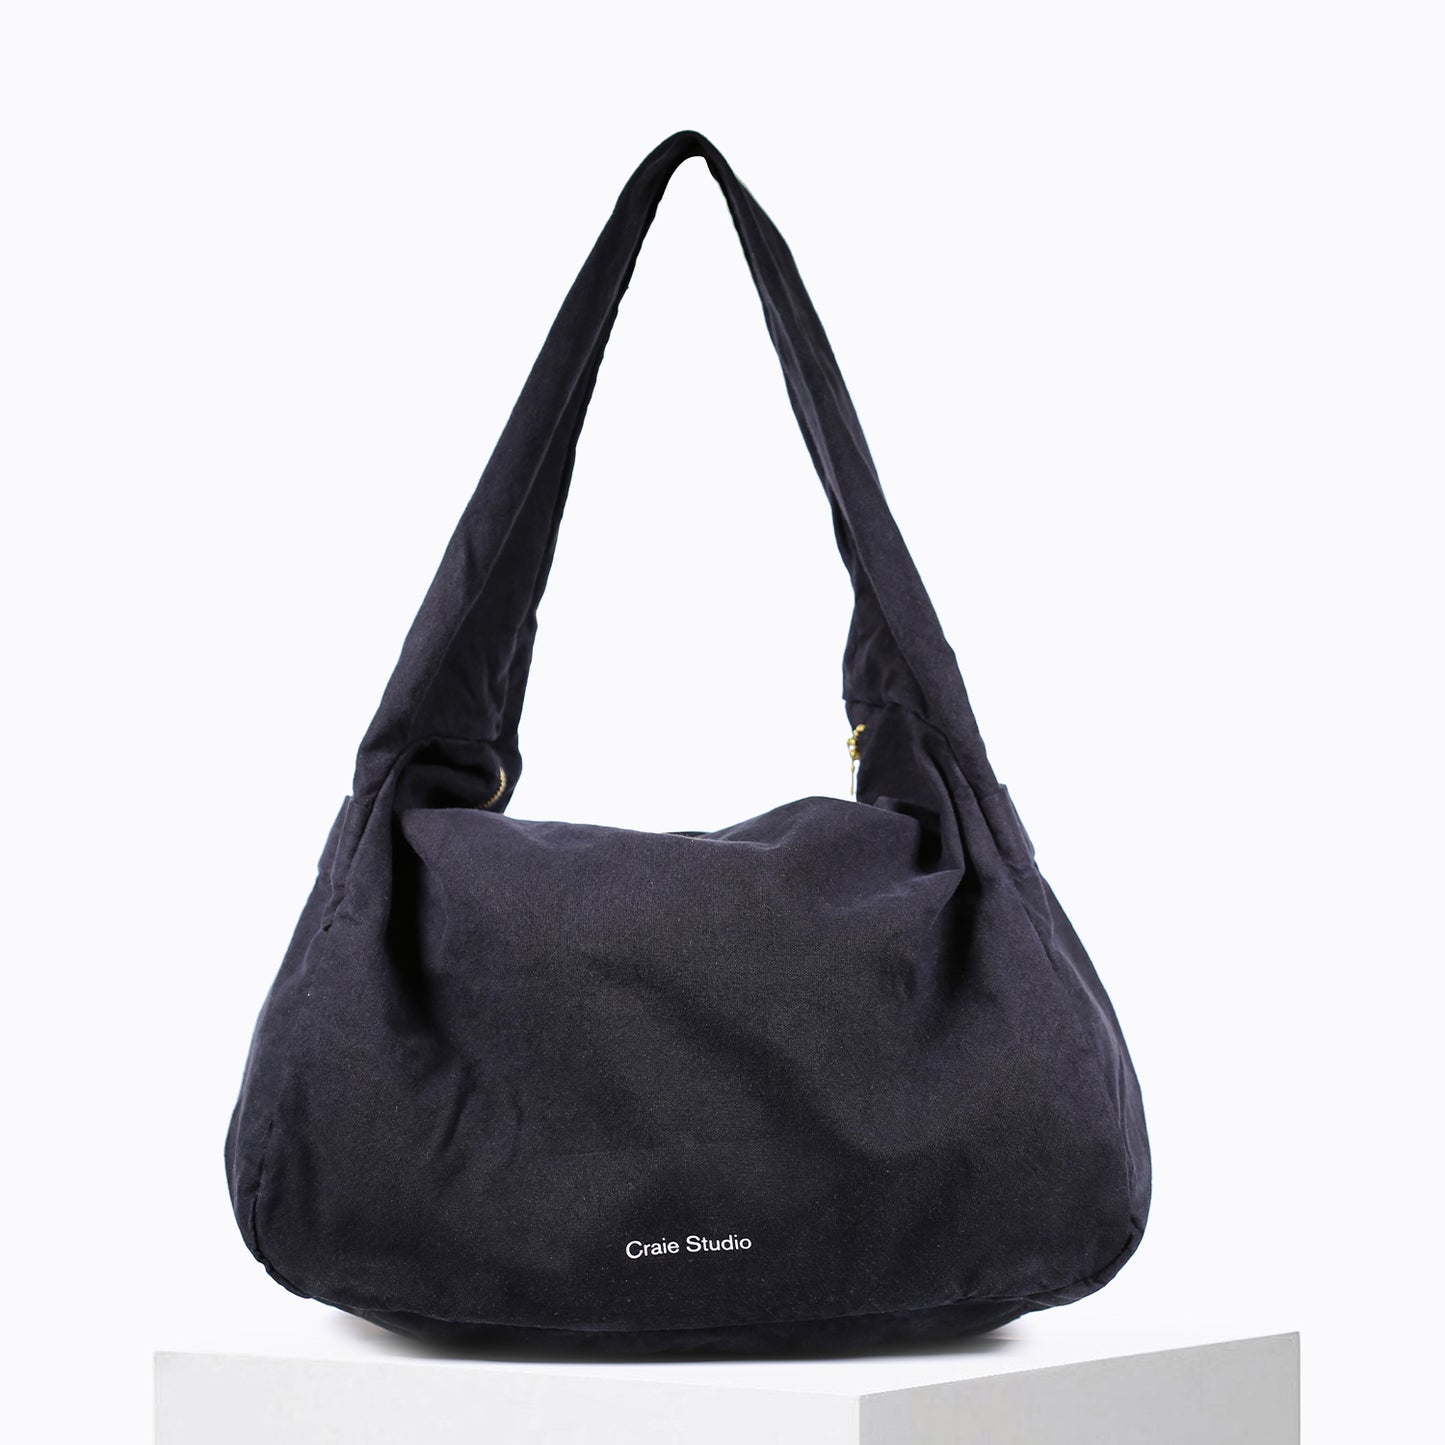 Small black cotton hobo bag